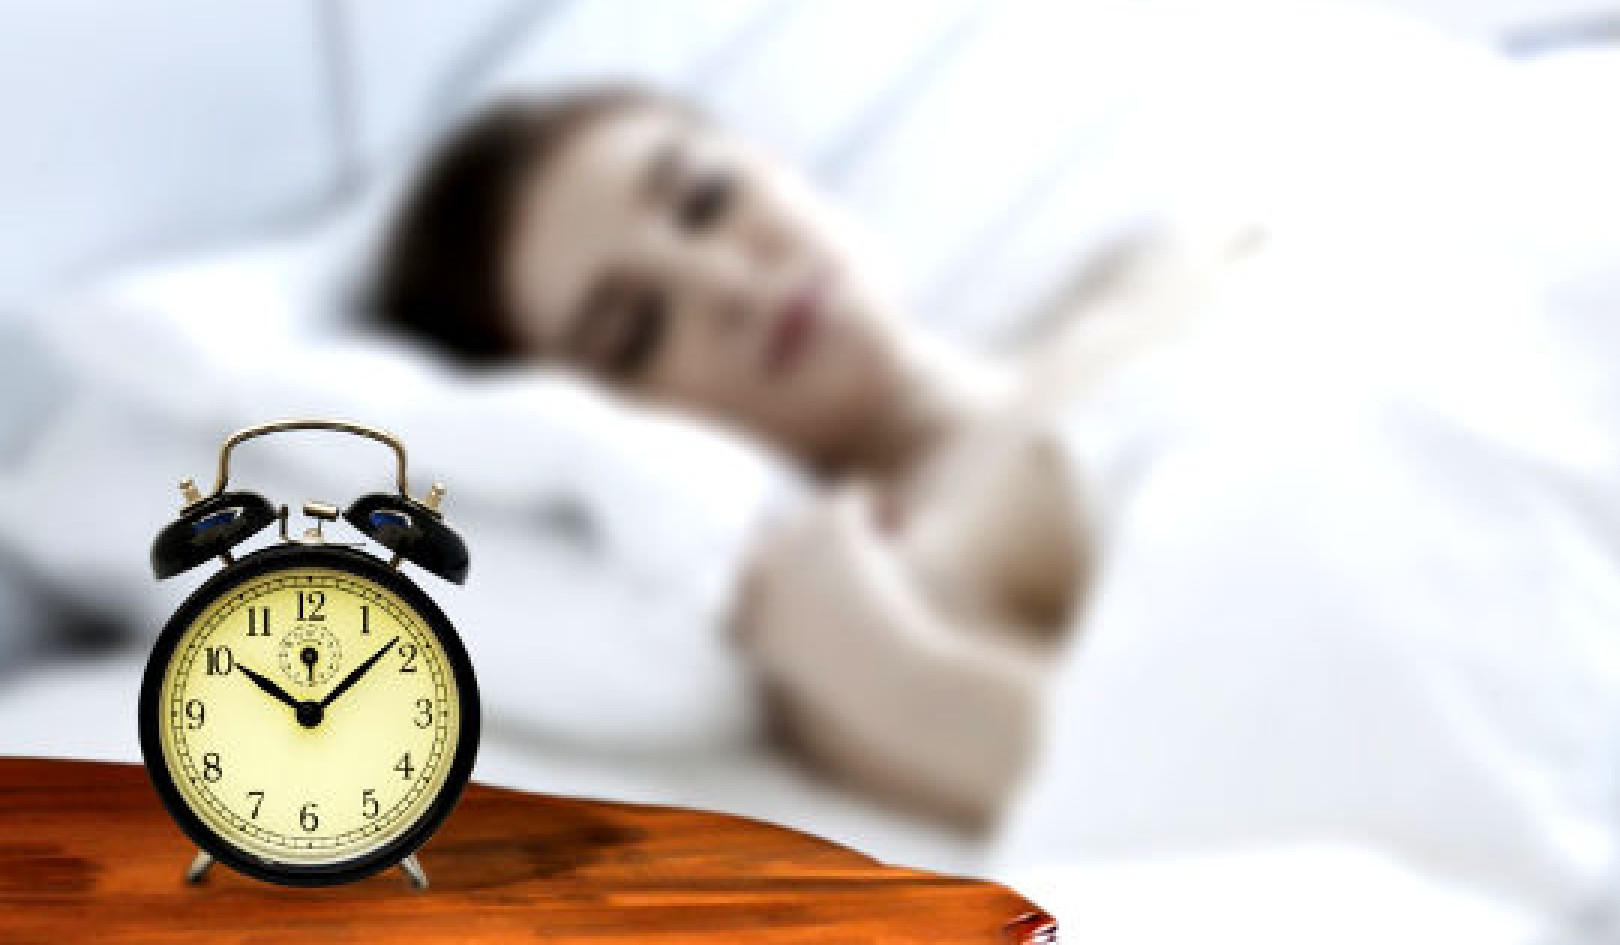 ถึงเวลาเติมพลัง: การนอนหลับอย่างเหมาะสมช่วยลดความเจ็บปวด